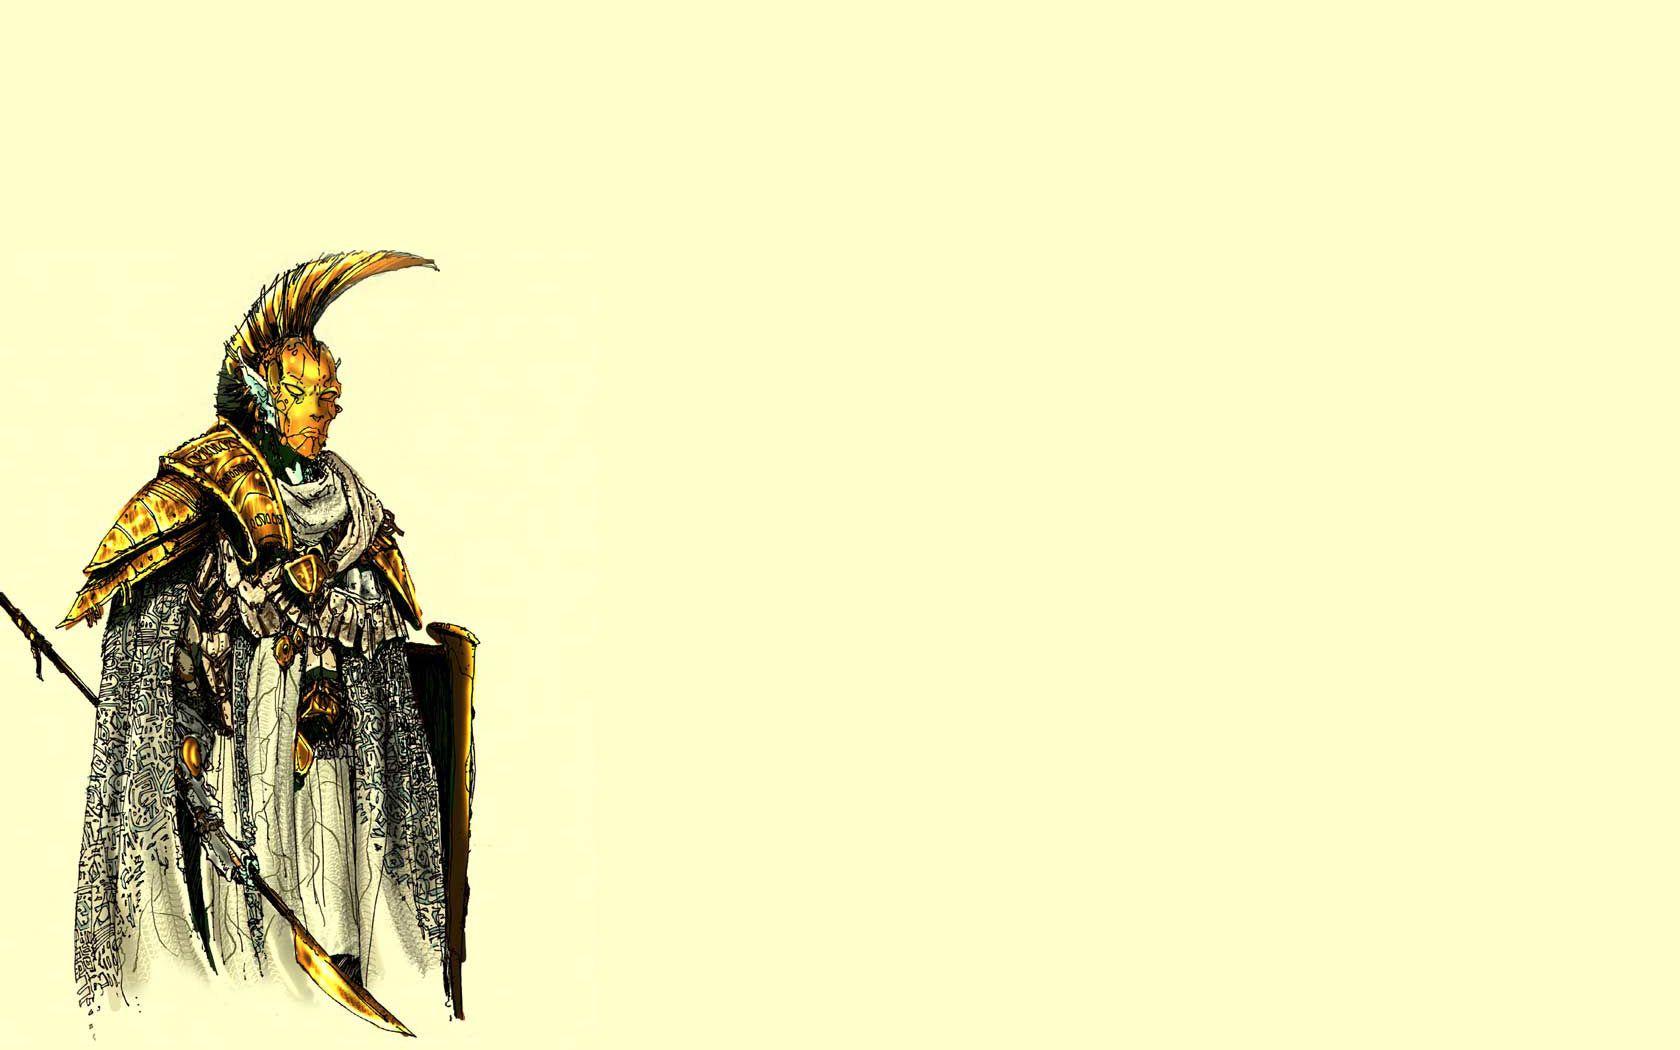 The Elder Scrolls III: Morrowind Wallpaper HD / Desktop and Mobile